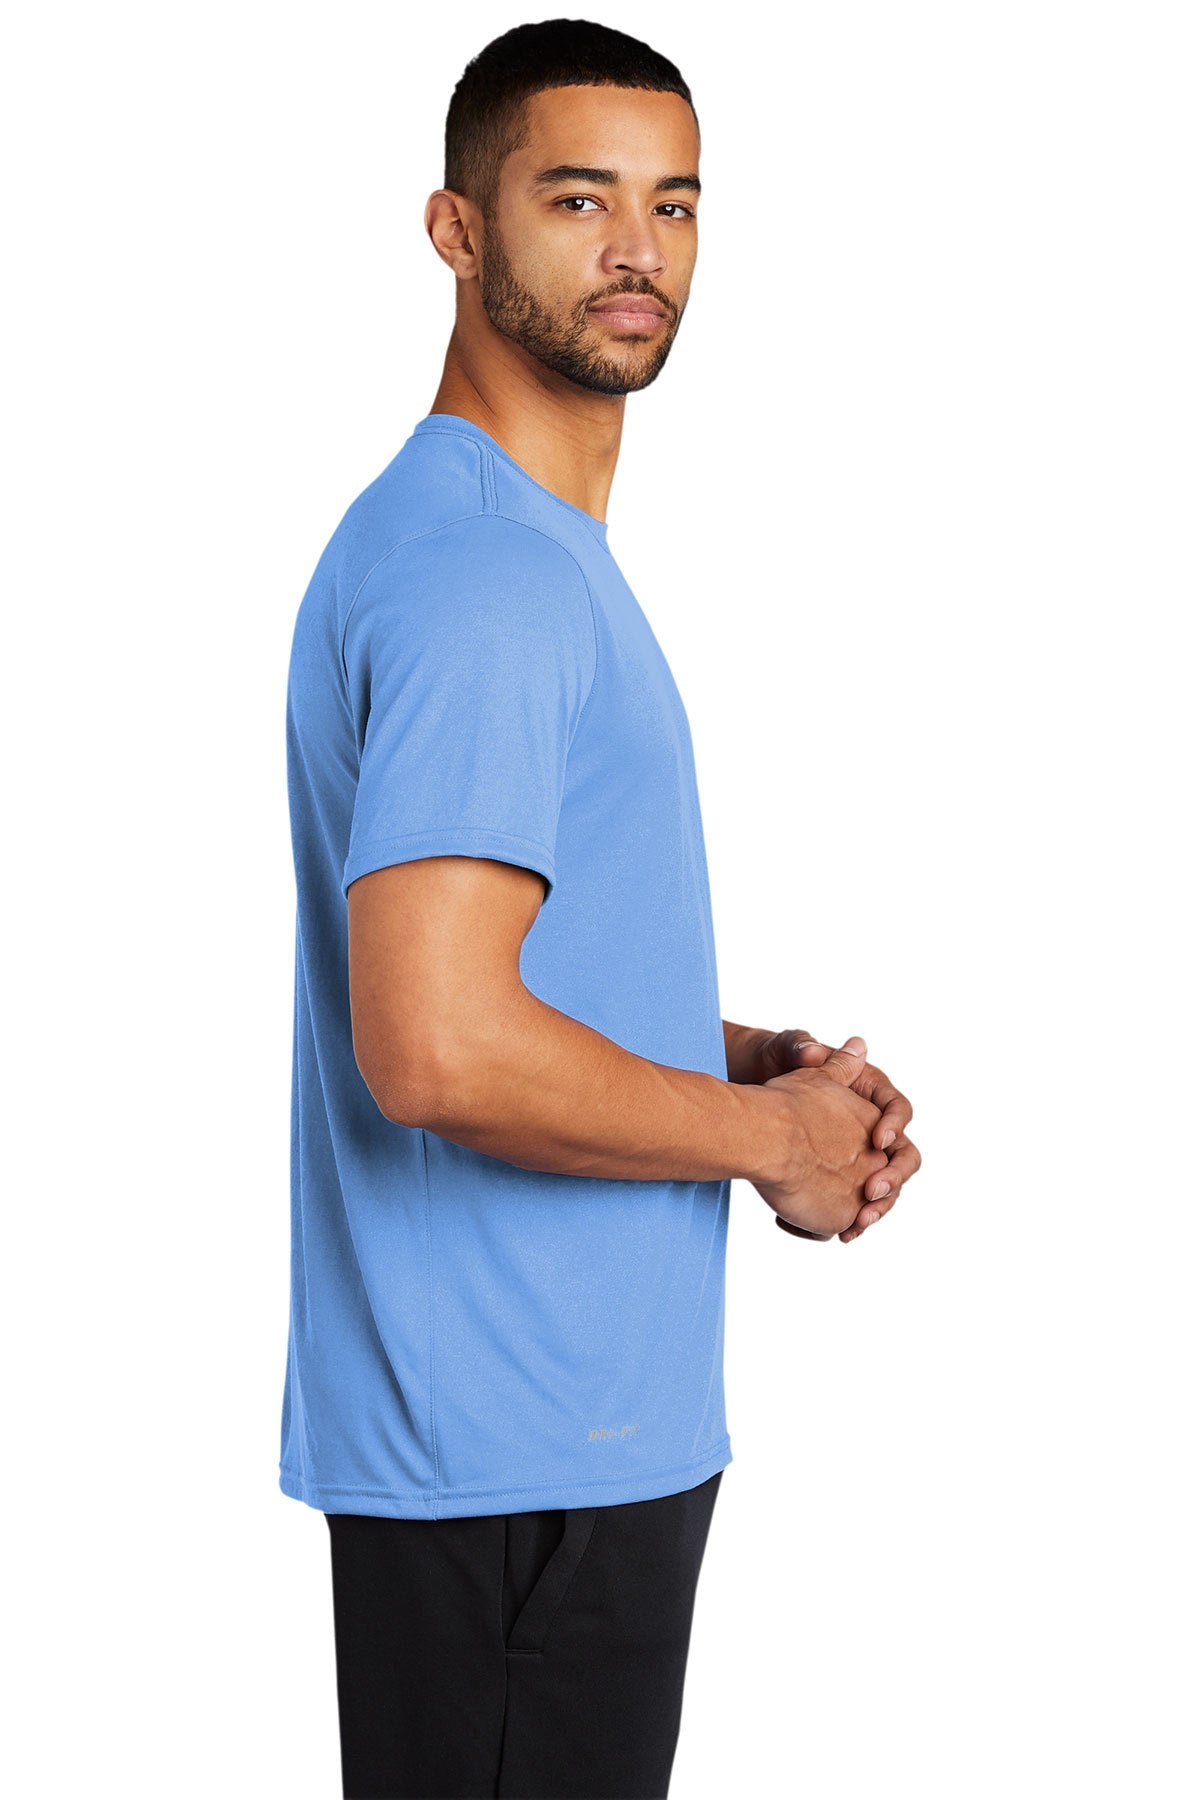 Nike Legend Customized T-Shirts, Valor Blue